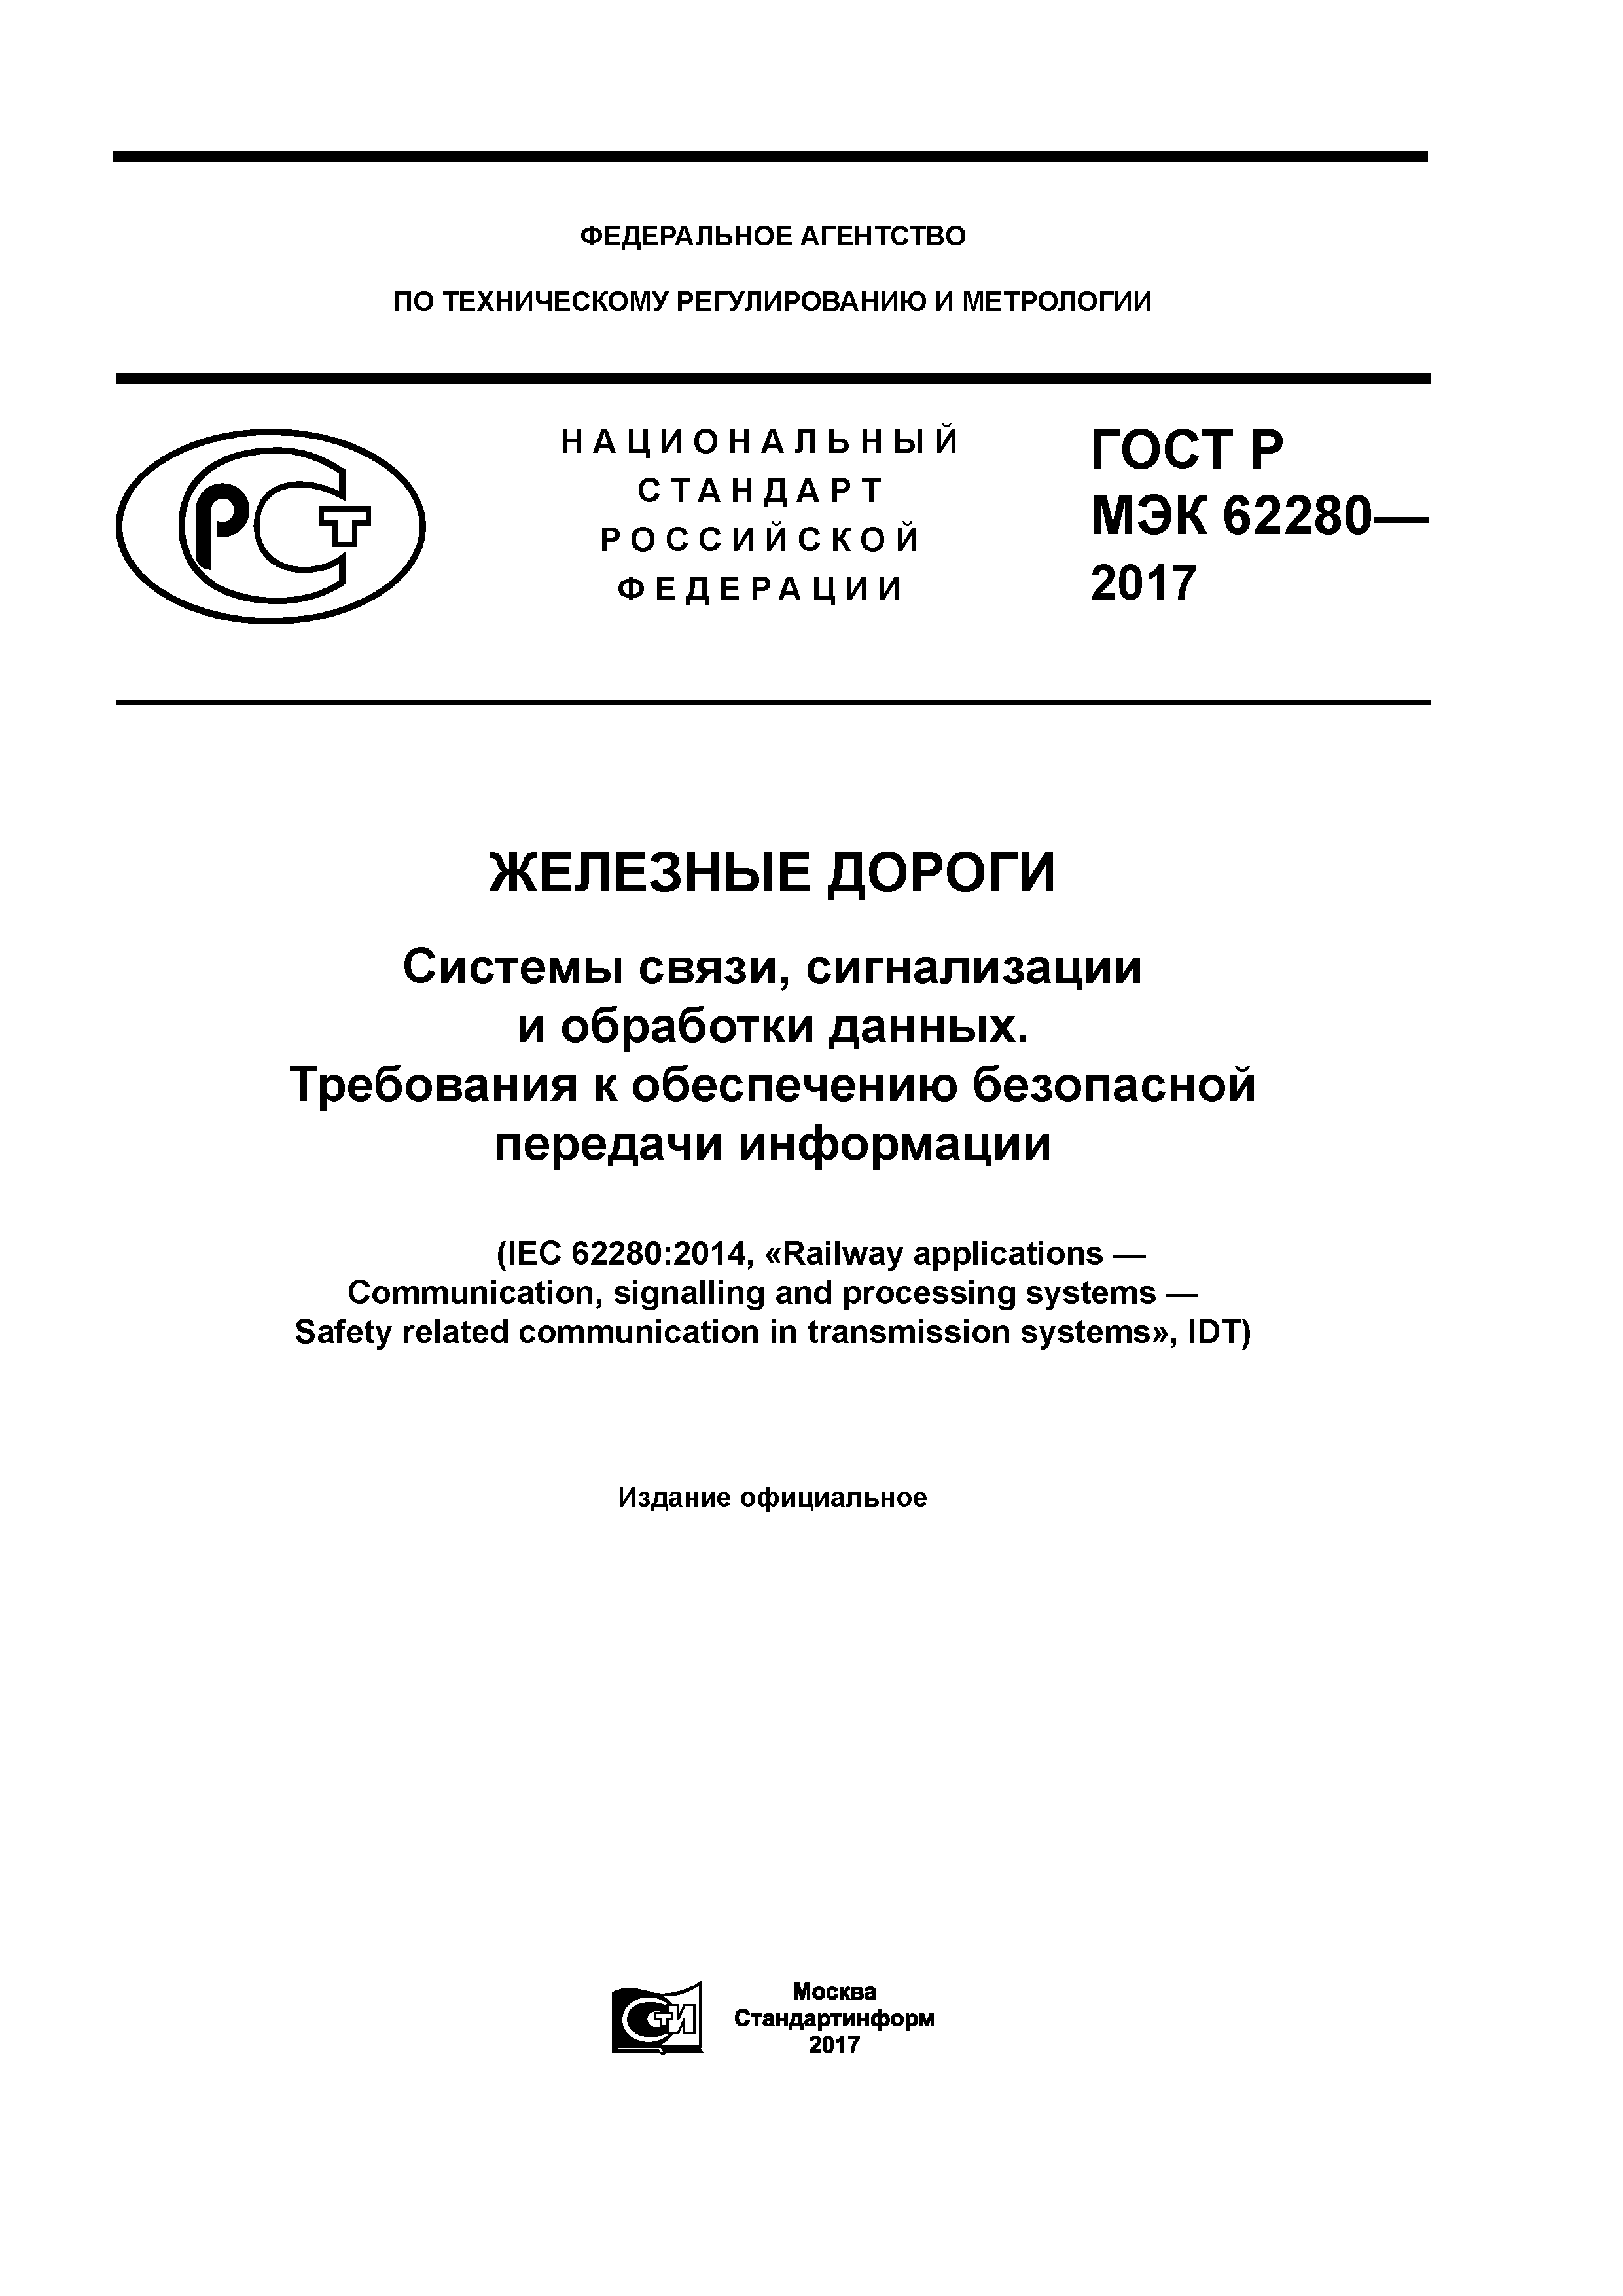 ГОСТ Р МЭК 62280-2017